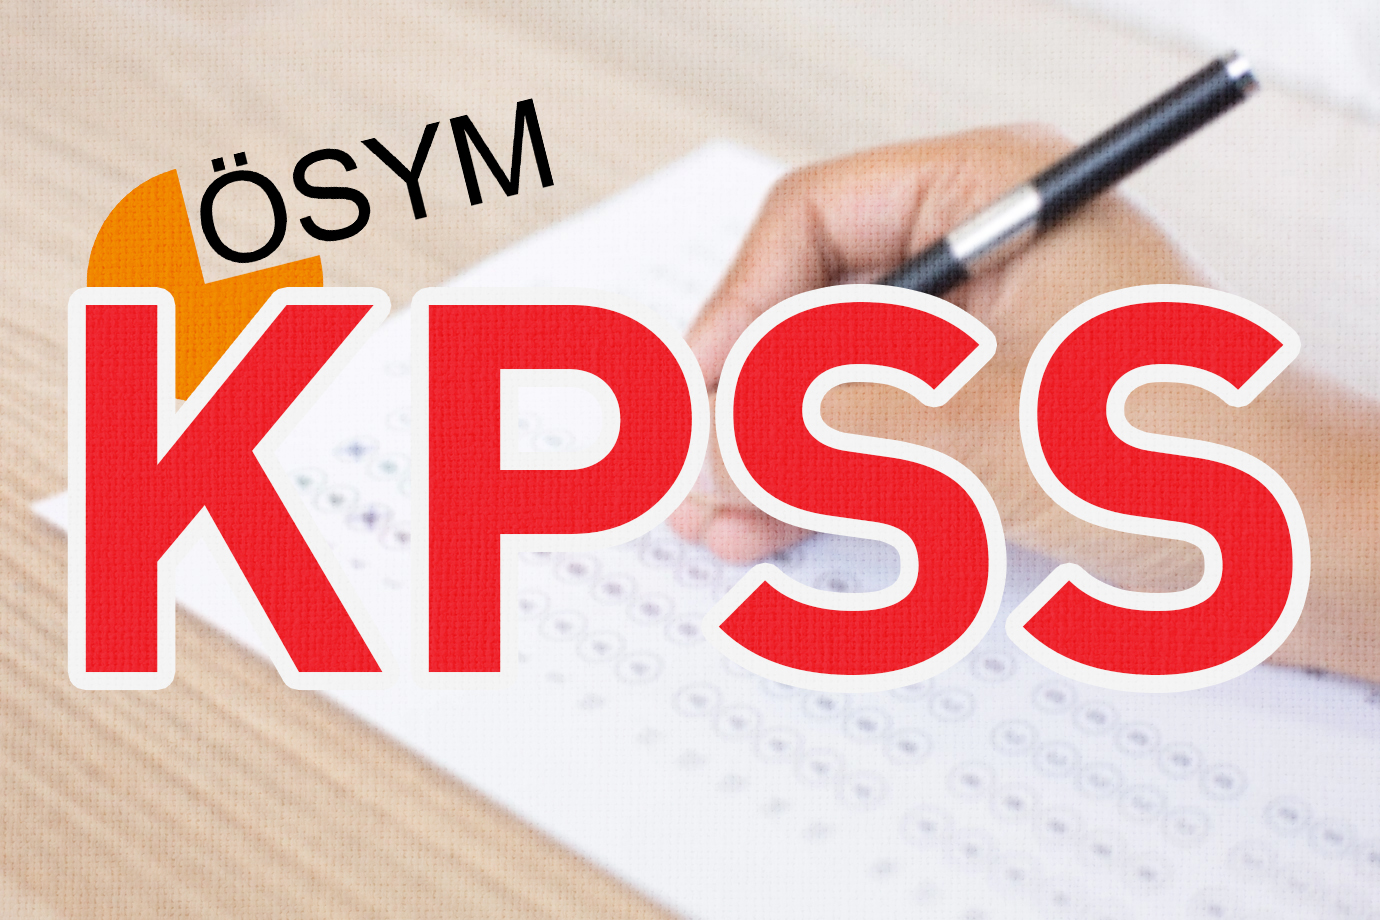 KPSS Ortaöğretim Sınav sonuçları açıklandı